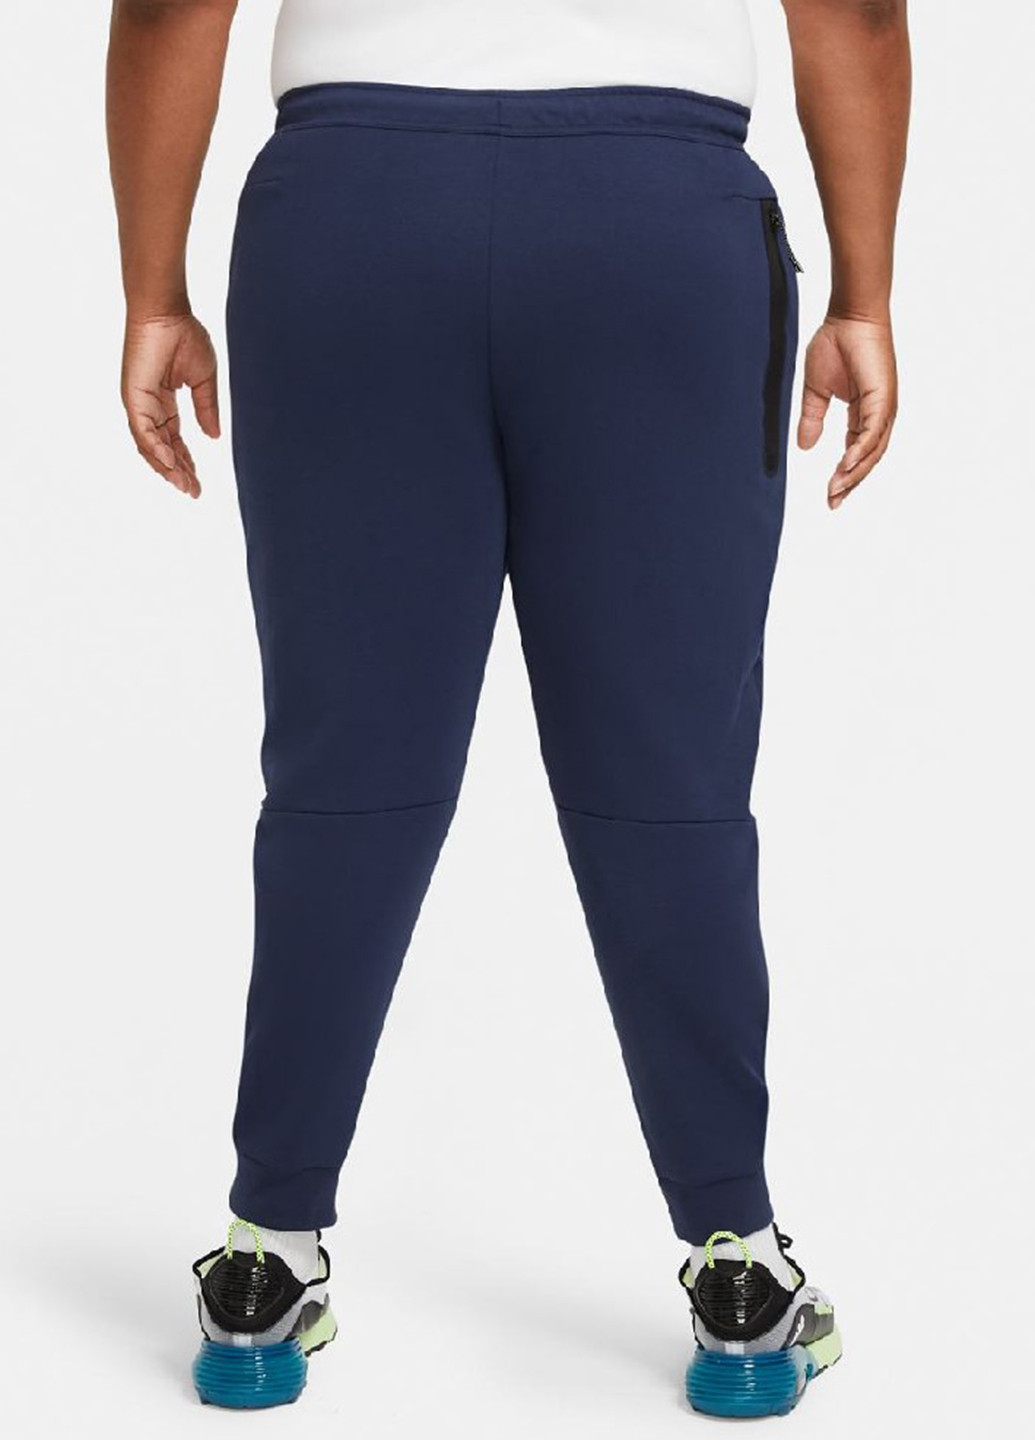 Темно-синие спортивные демисезонные джоггеры брюки Nike